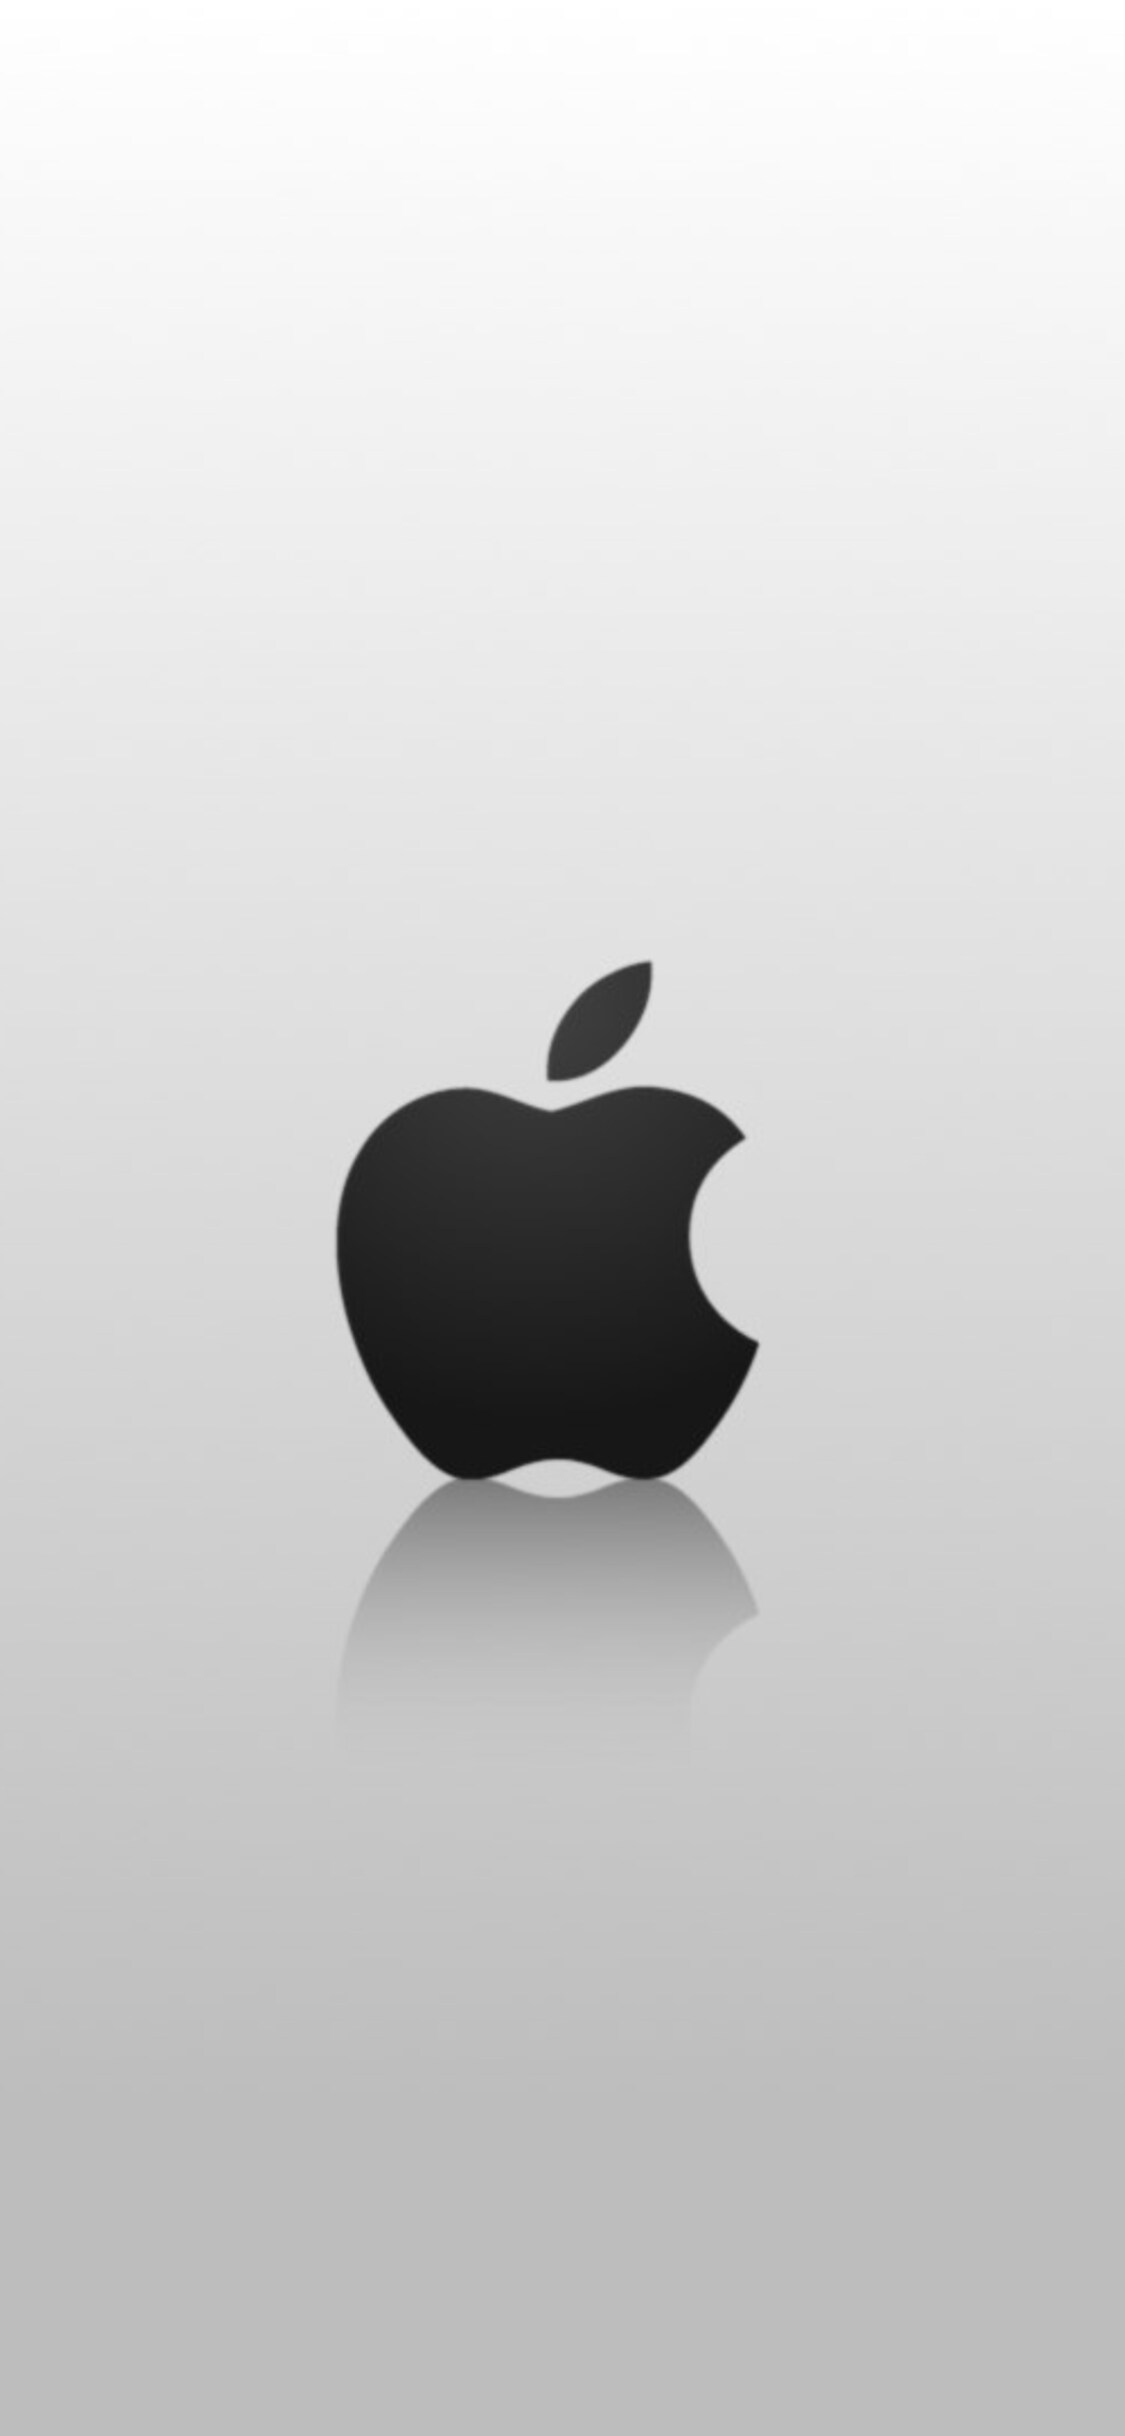 Download Gambar Iphone X Apple Logo Wallpaper Hd terbaru 2020